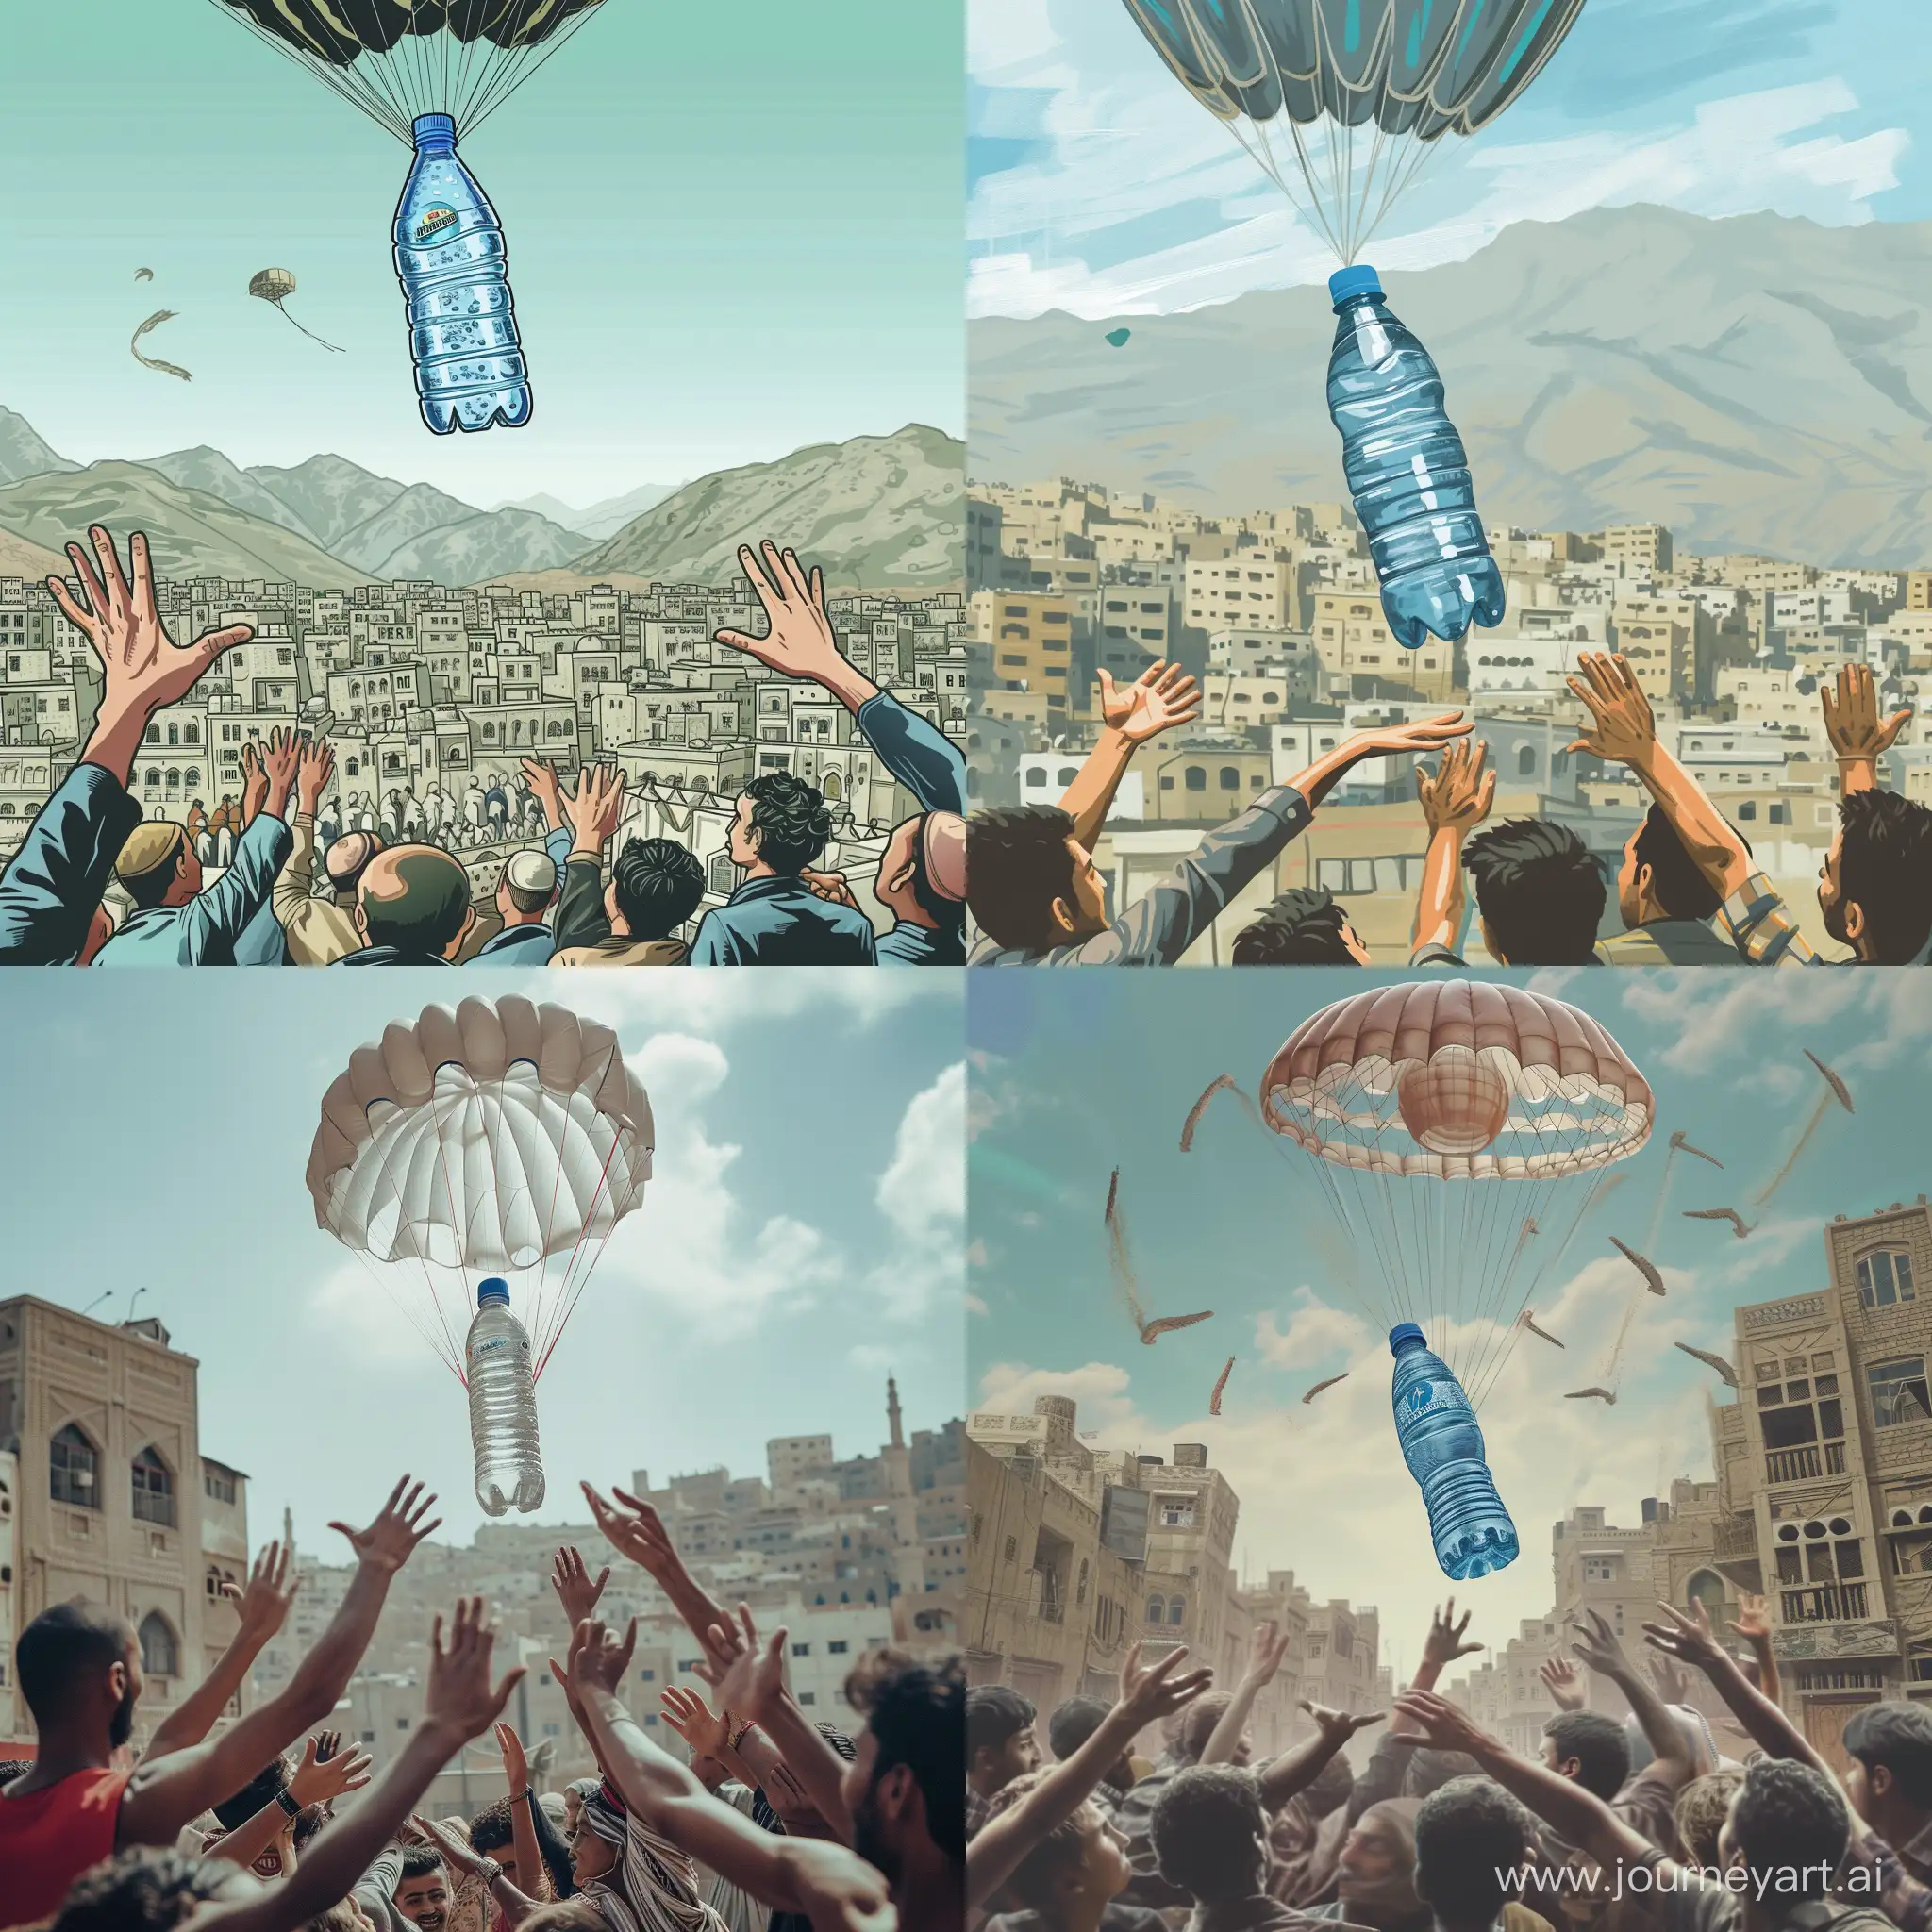 قارورة مياه معدنية تطير بمظلة 
 رياضة  فوق مدينة صنعاء والناس يمدون ايديهم فرحين بها